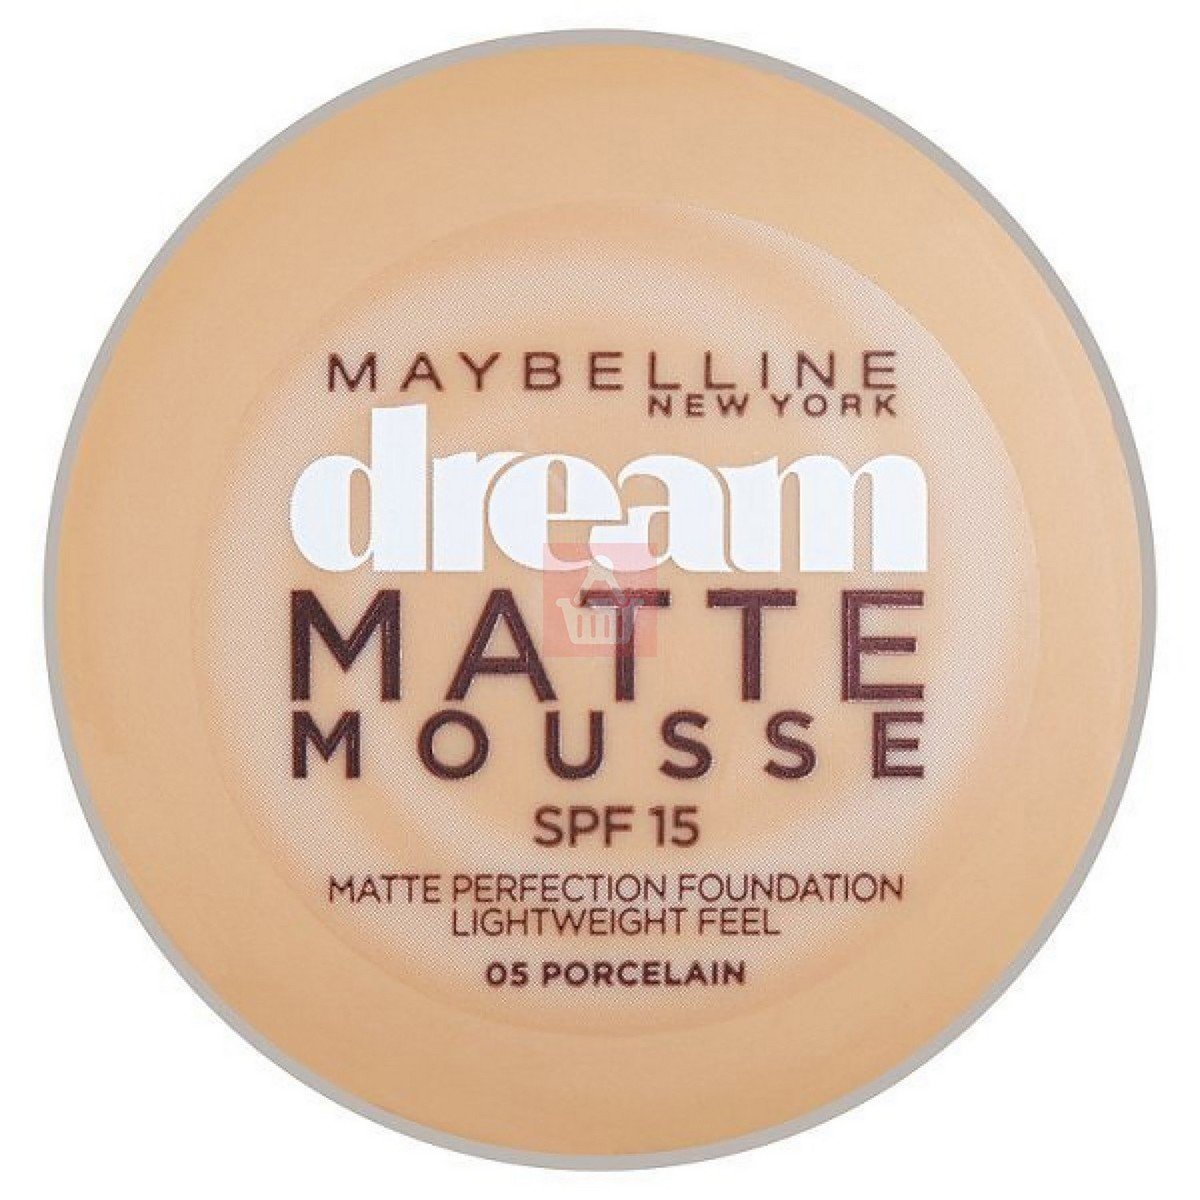 Maybelline Dream Matte Mousse Foundation - Porcelain 05 1pc